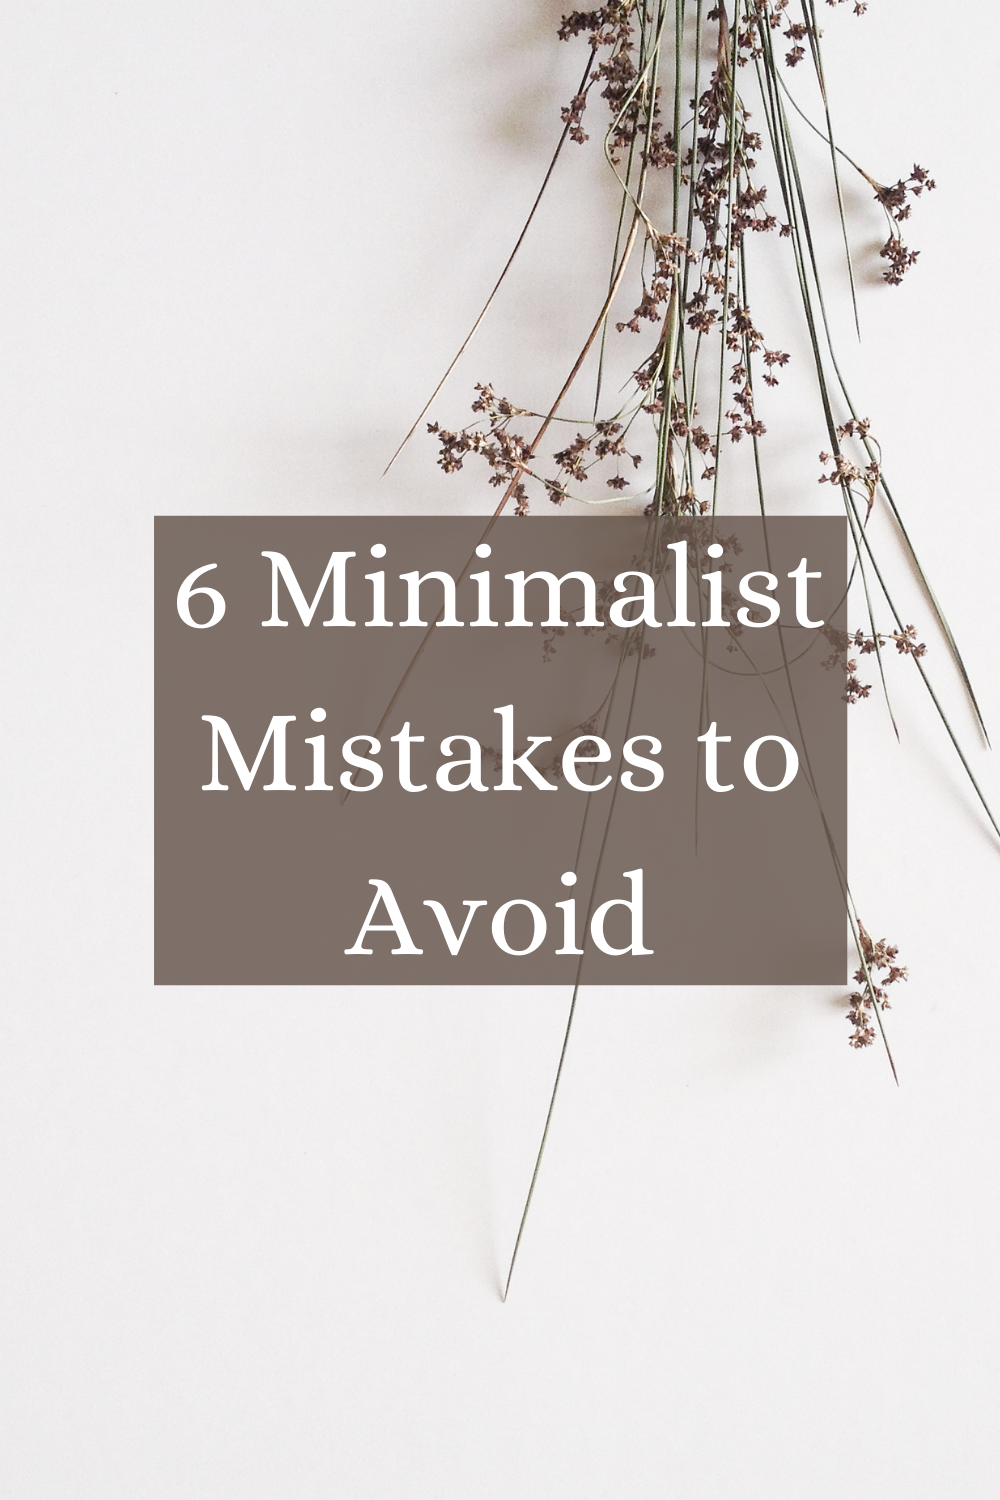 6 Minimalist Mistakes